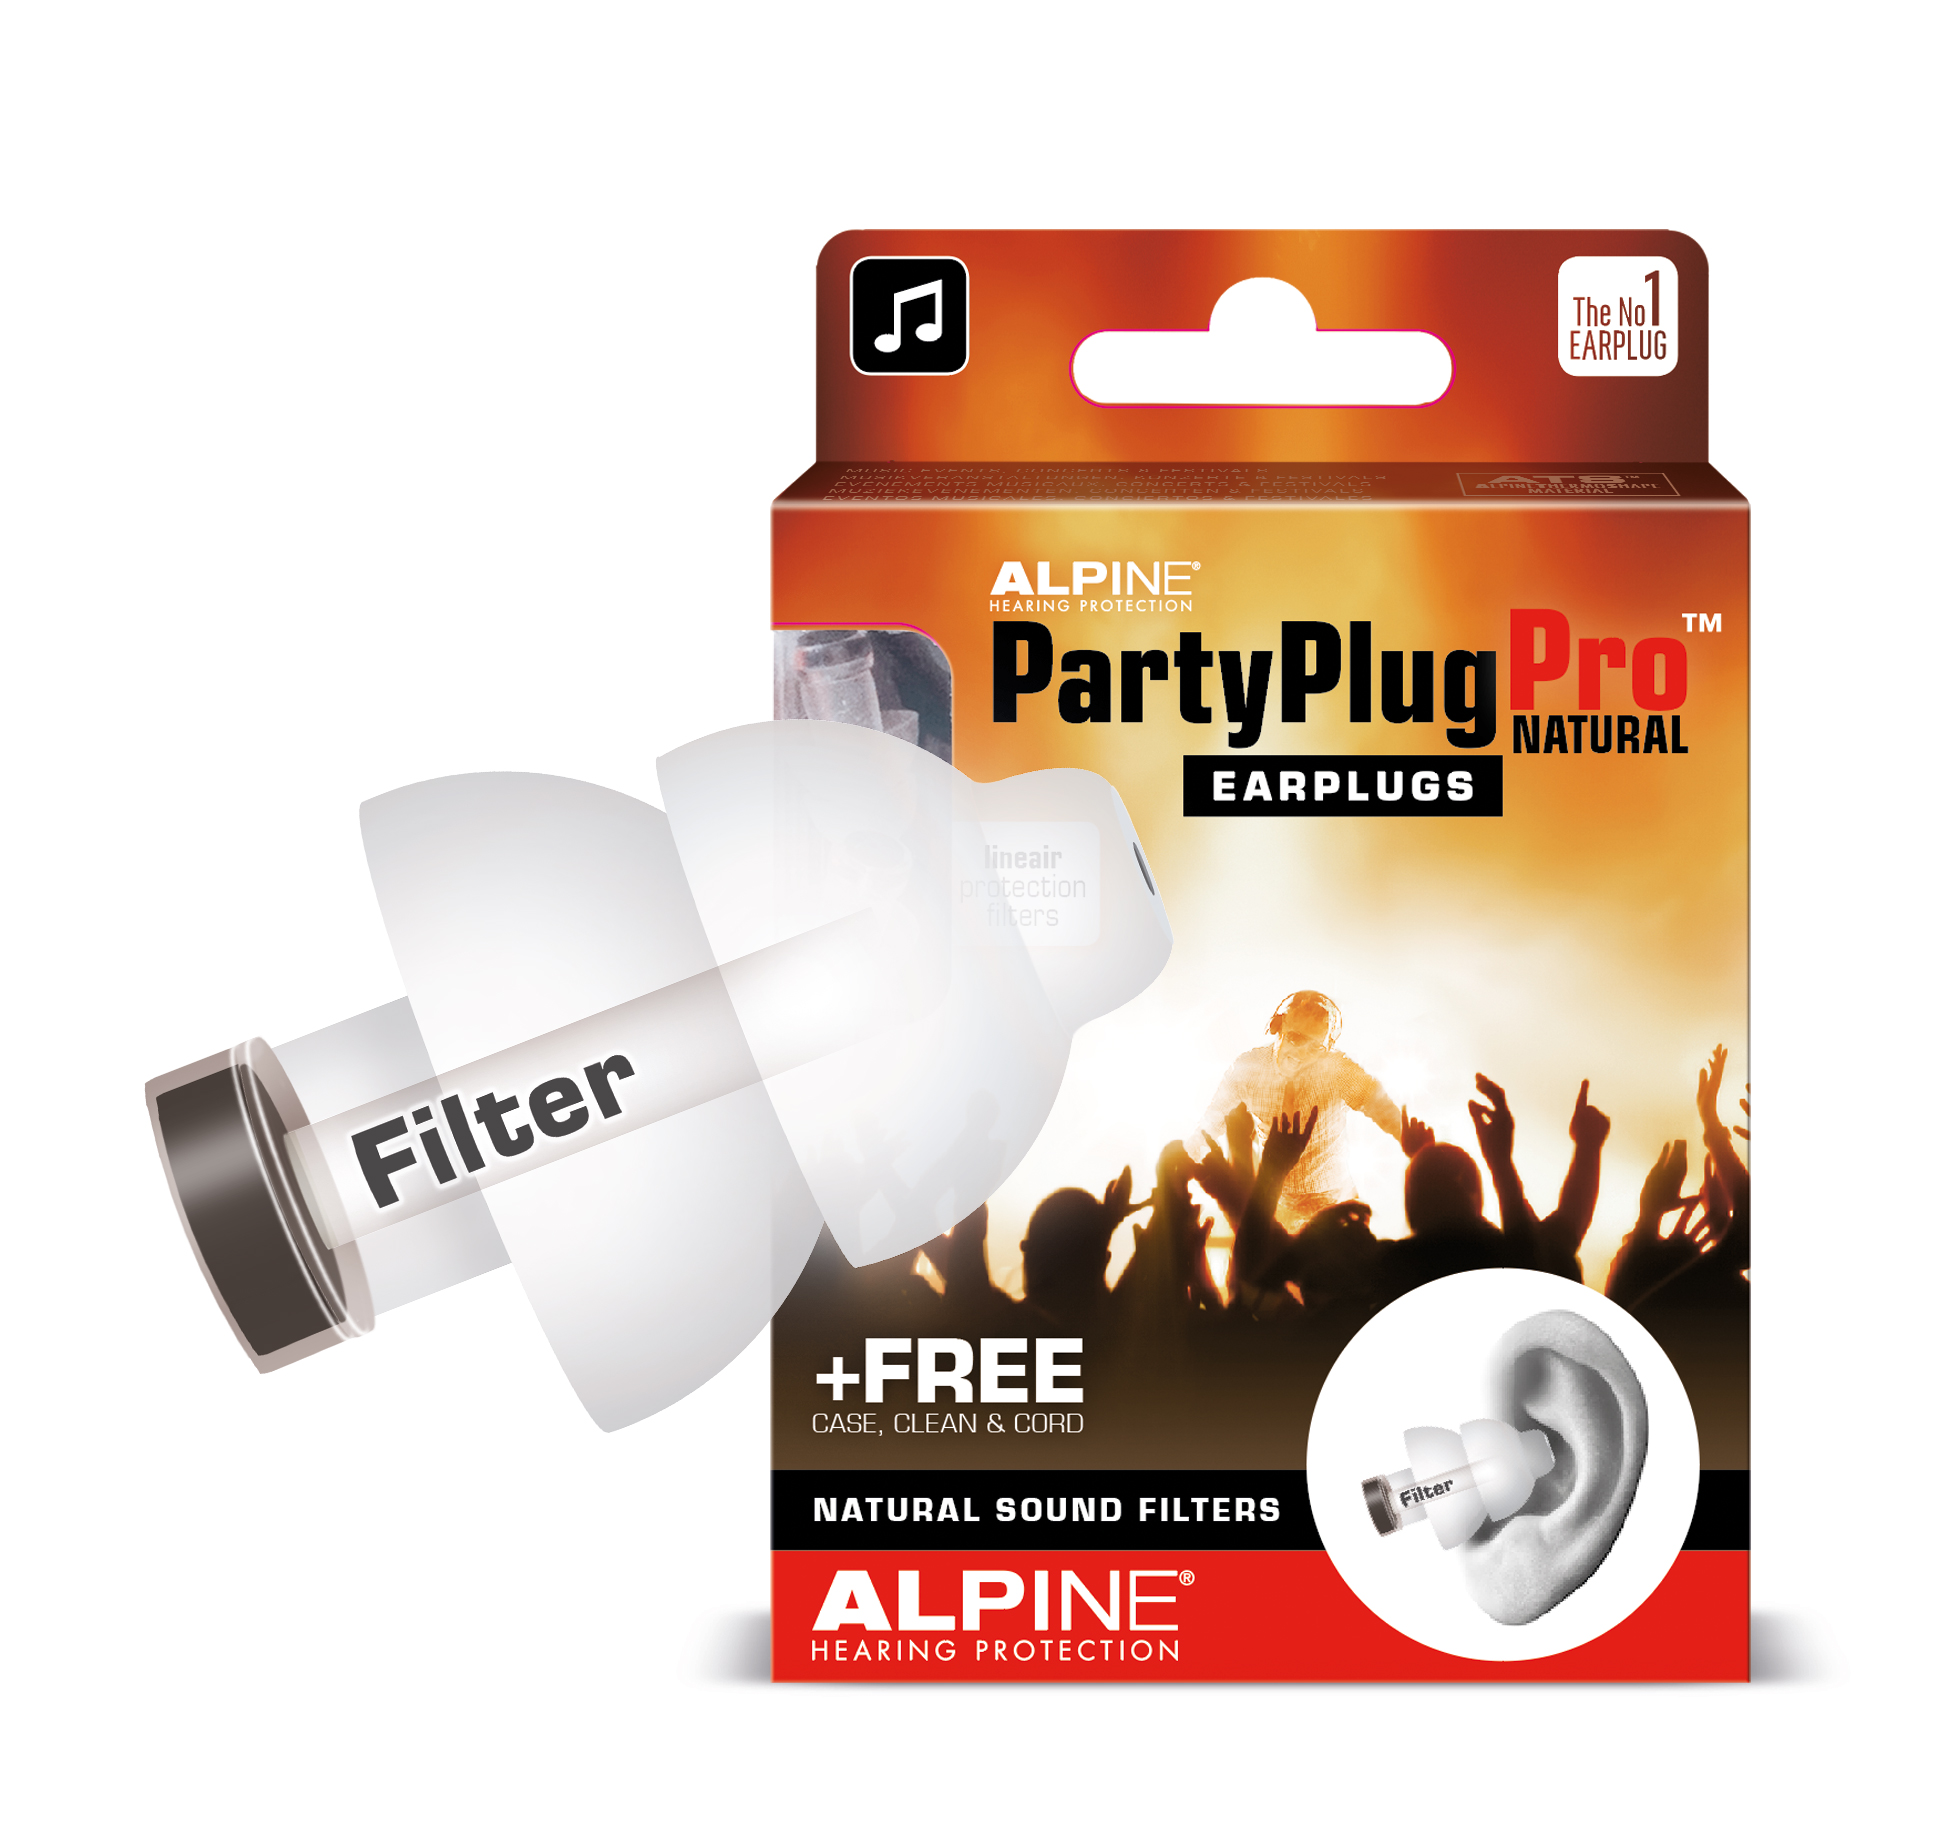 Ωτοασπίδες Alpine PartyPlug Pro